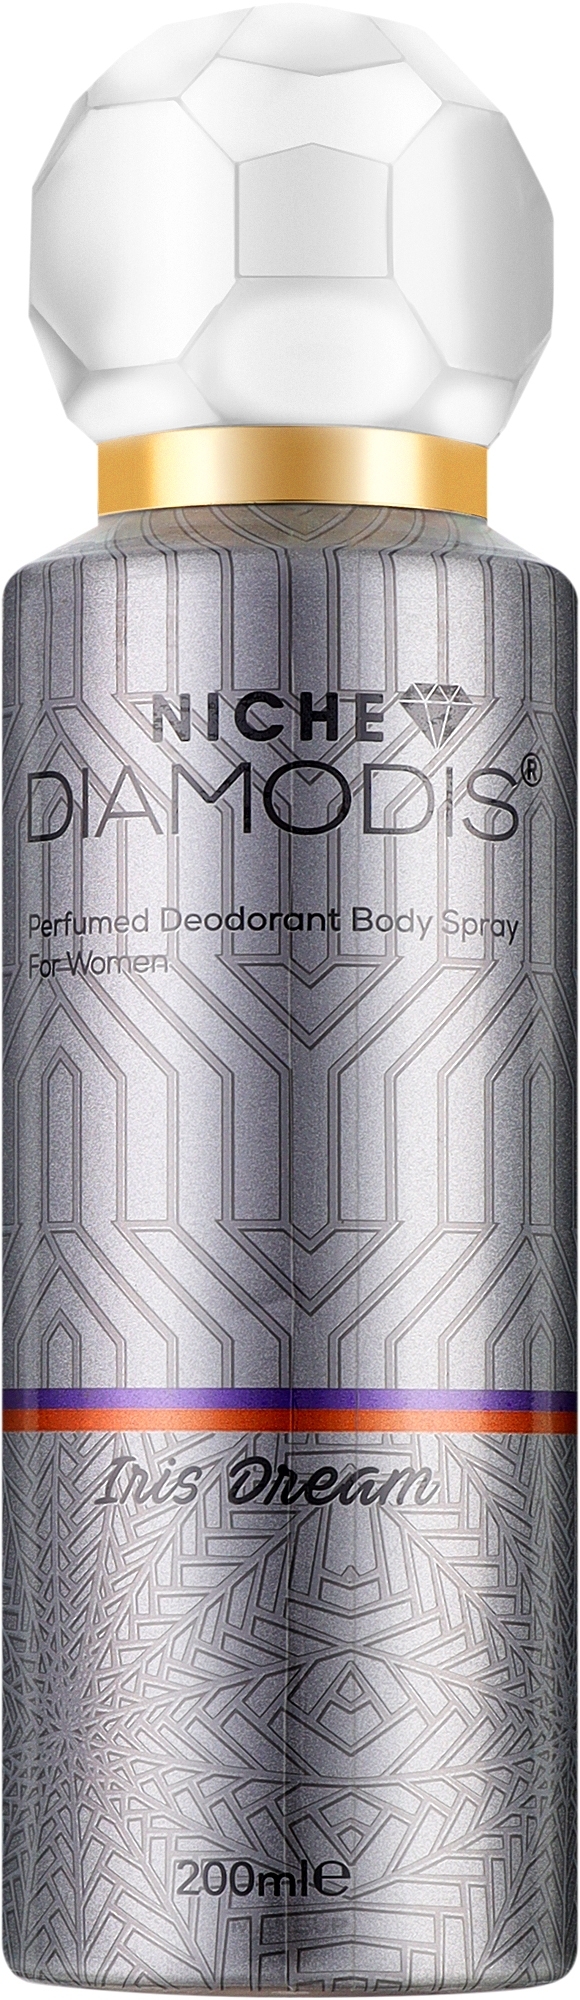 Нішевий дезодорант для тіла - Niche Diamodis Iris Dream Perfumed Deodorant Body Spray — фото 200ml